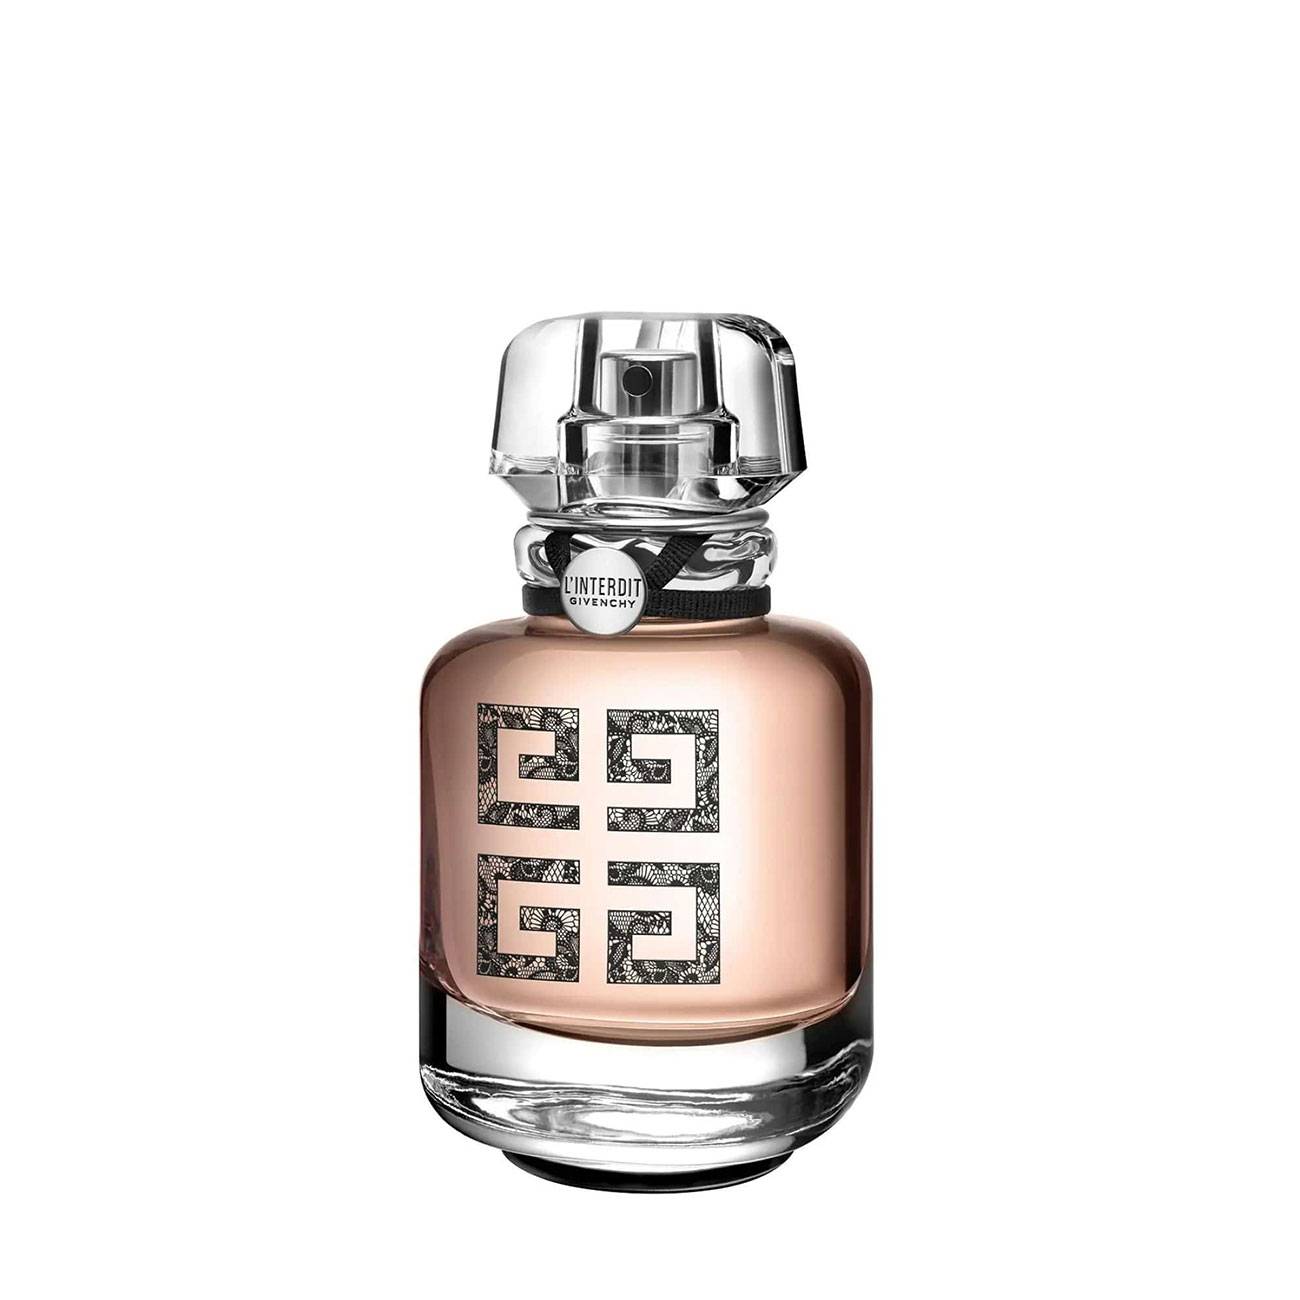 Apa de Parfum Givenchy L’INTERDIT COUTURE EDITION 50ml cu comanda online